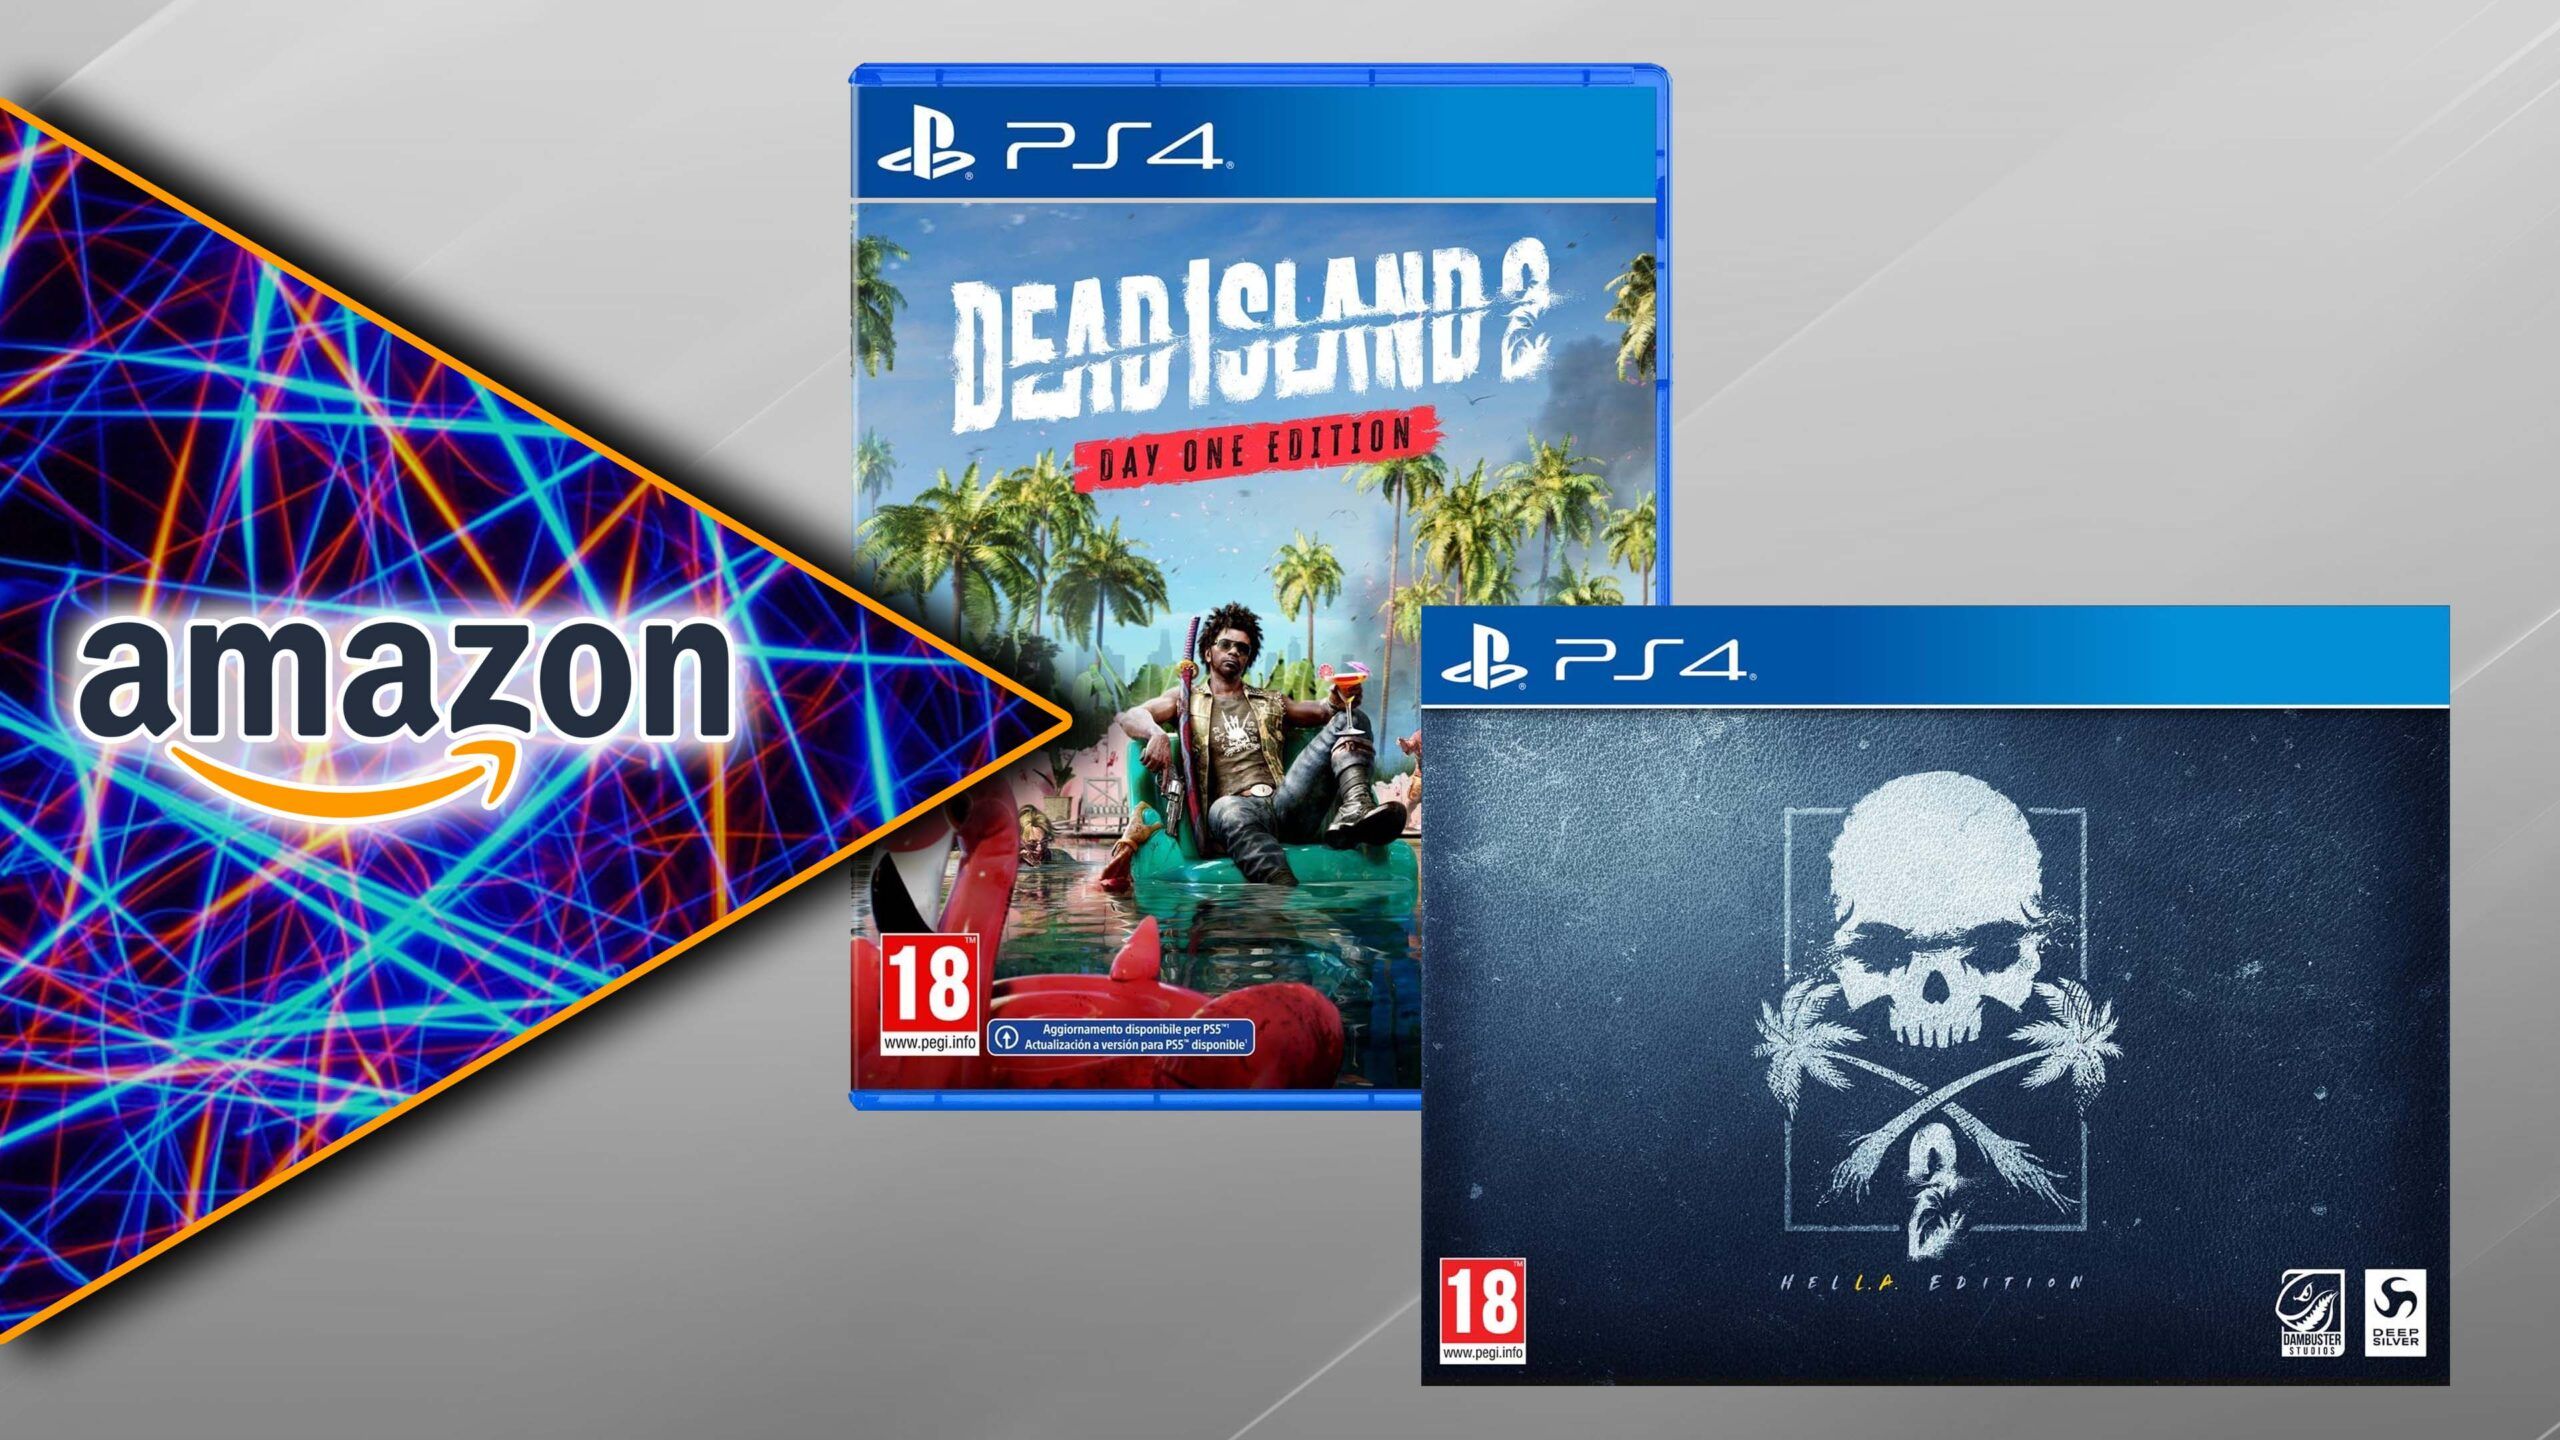 Offerte : Dead Island 2 già disponibile a prezzo scontato!